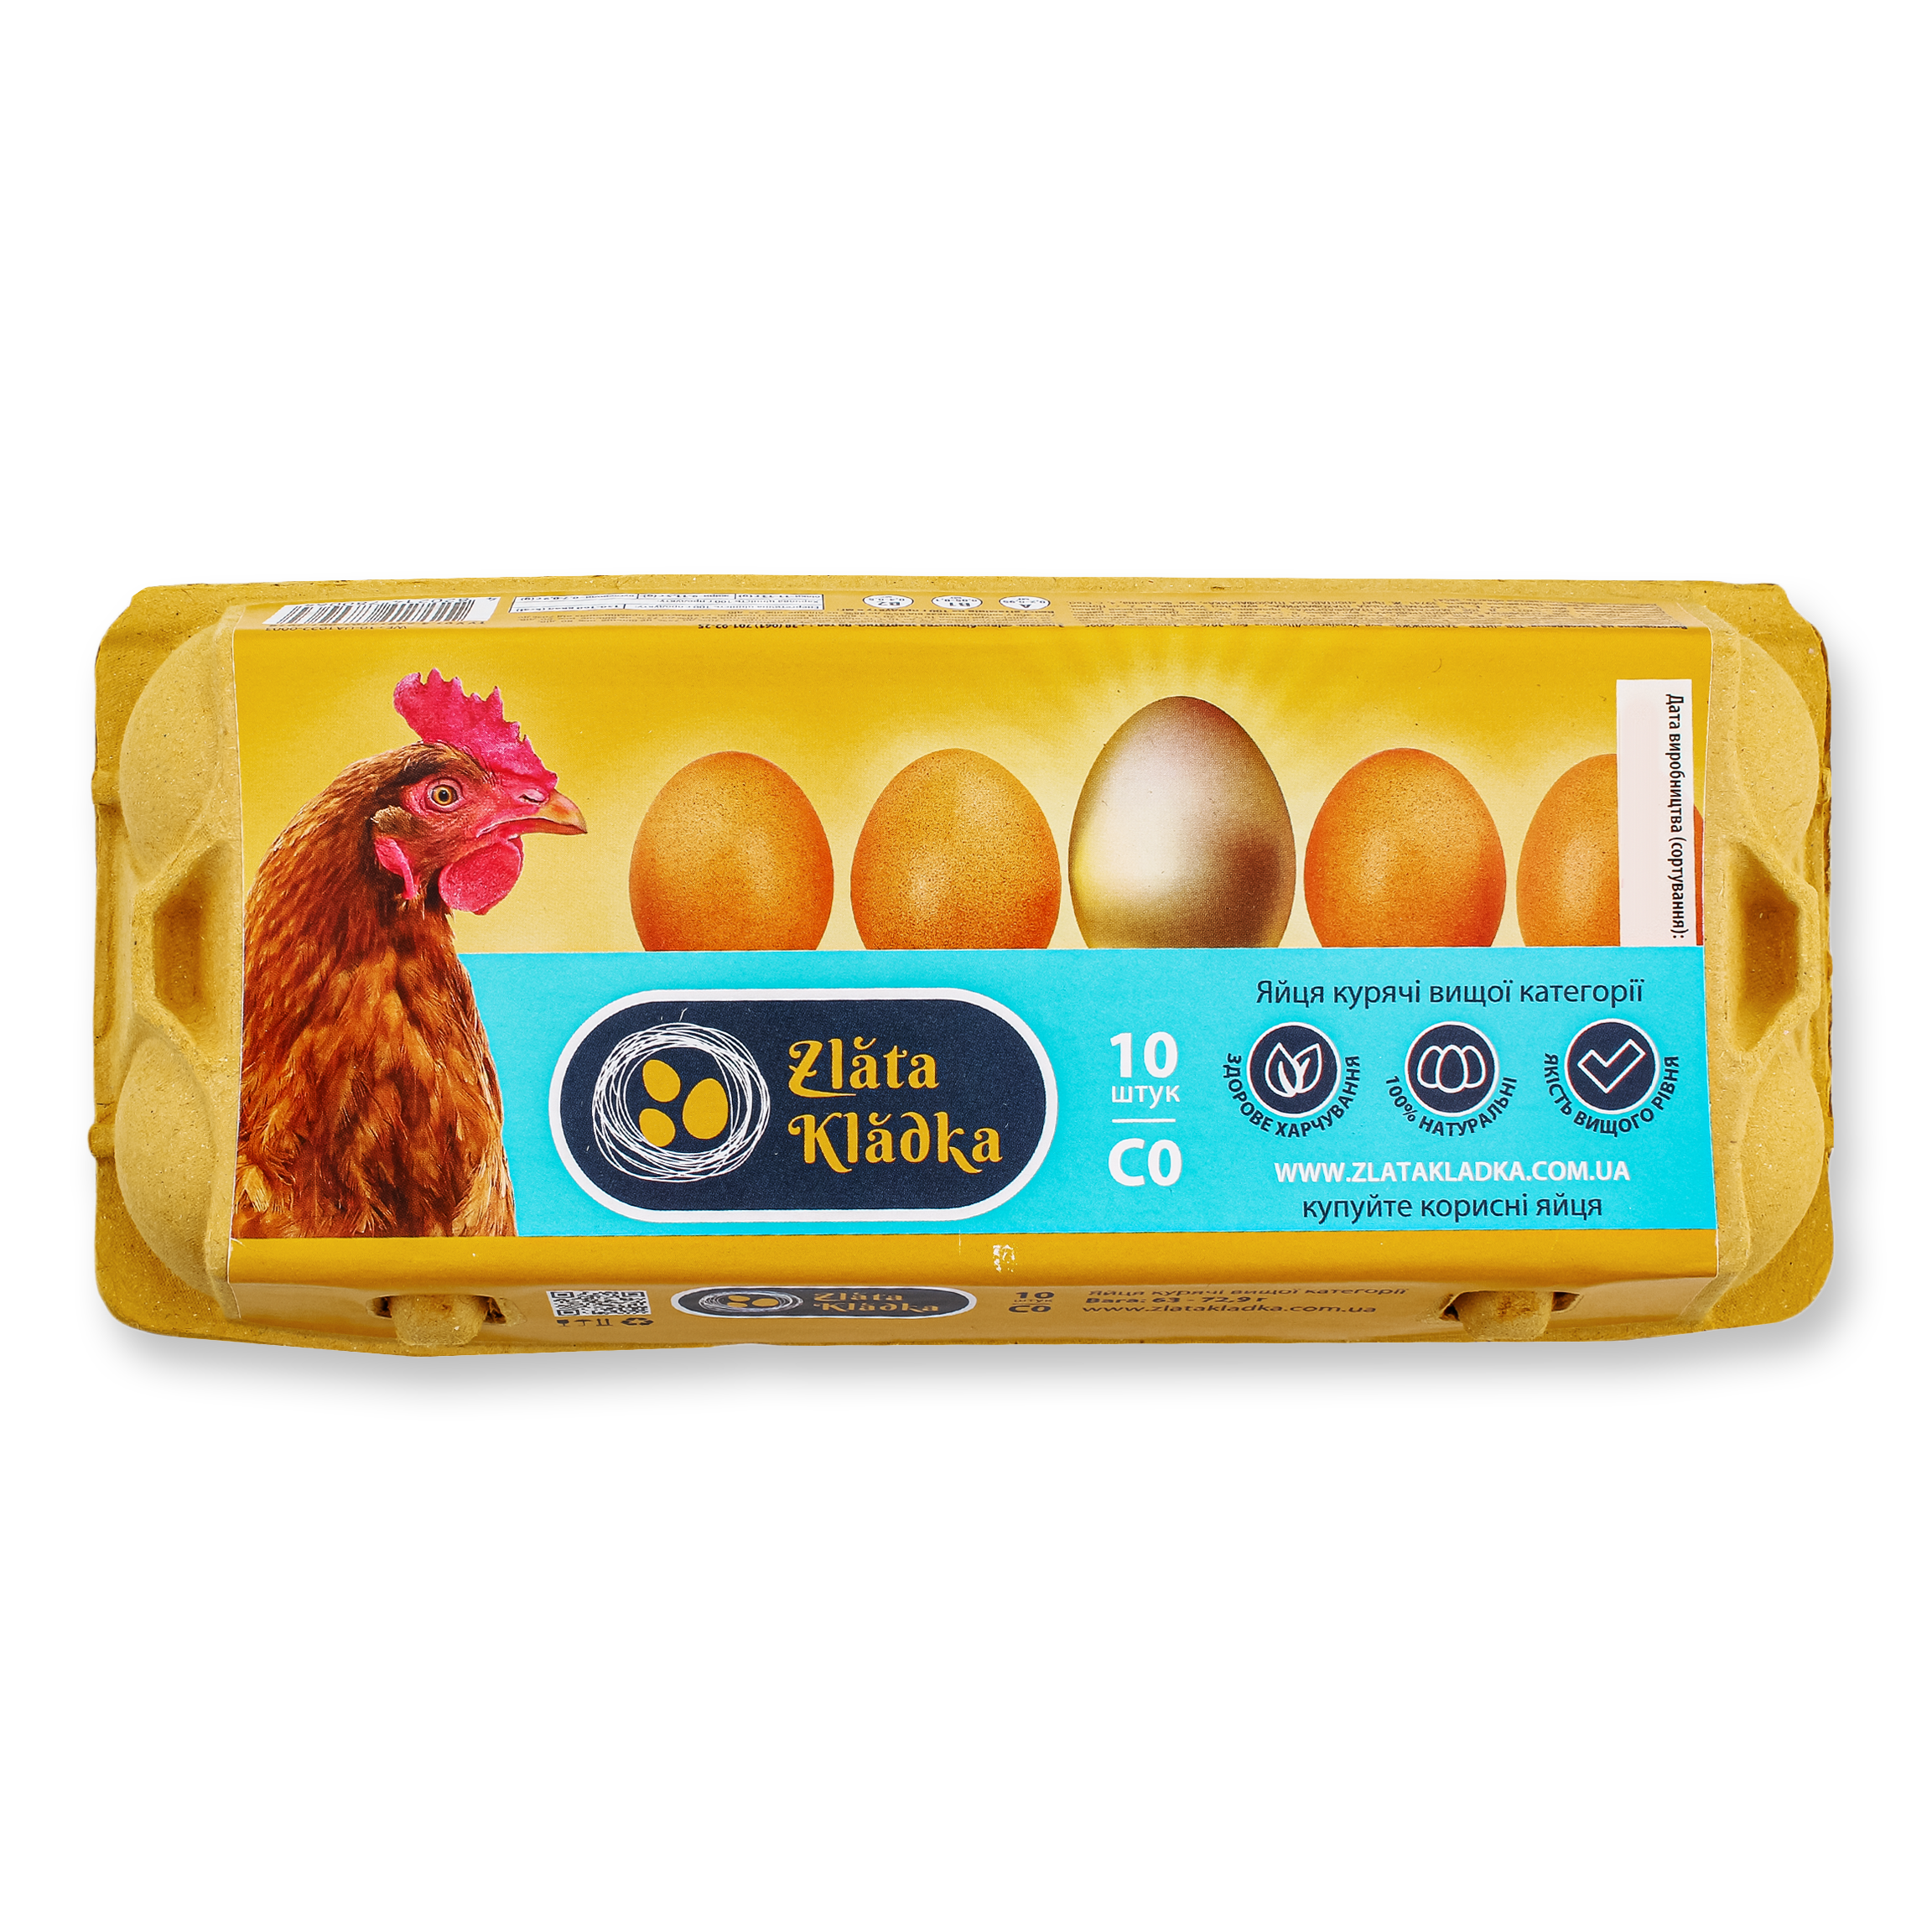 Яйца Zlata Кladka куриные С0 10шт